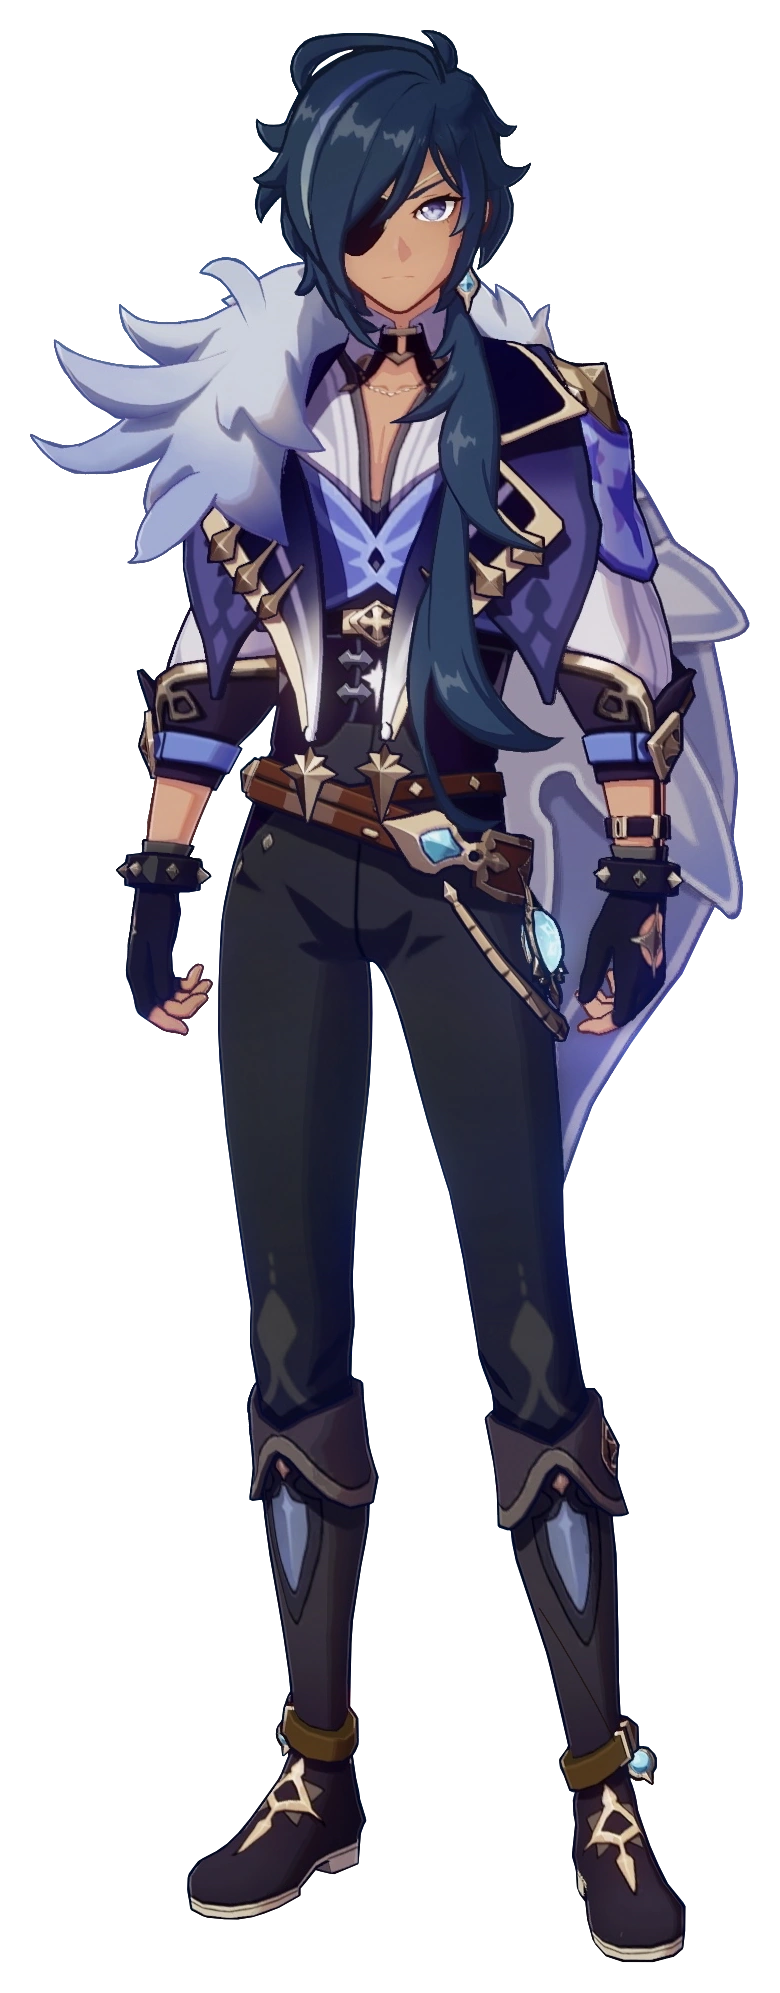 Кэйа - играбельный Крио персонаж Genshin Impact. Капитан кавалерии Ордо Фавониус.